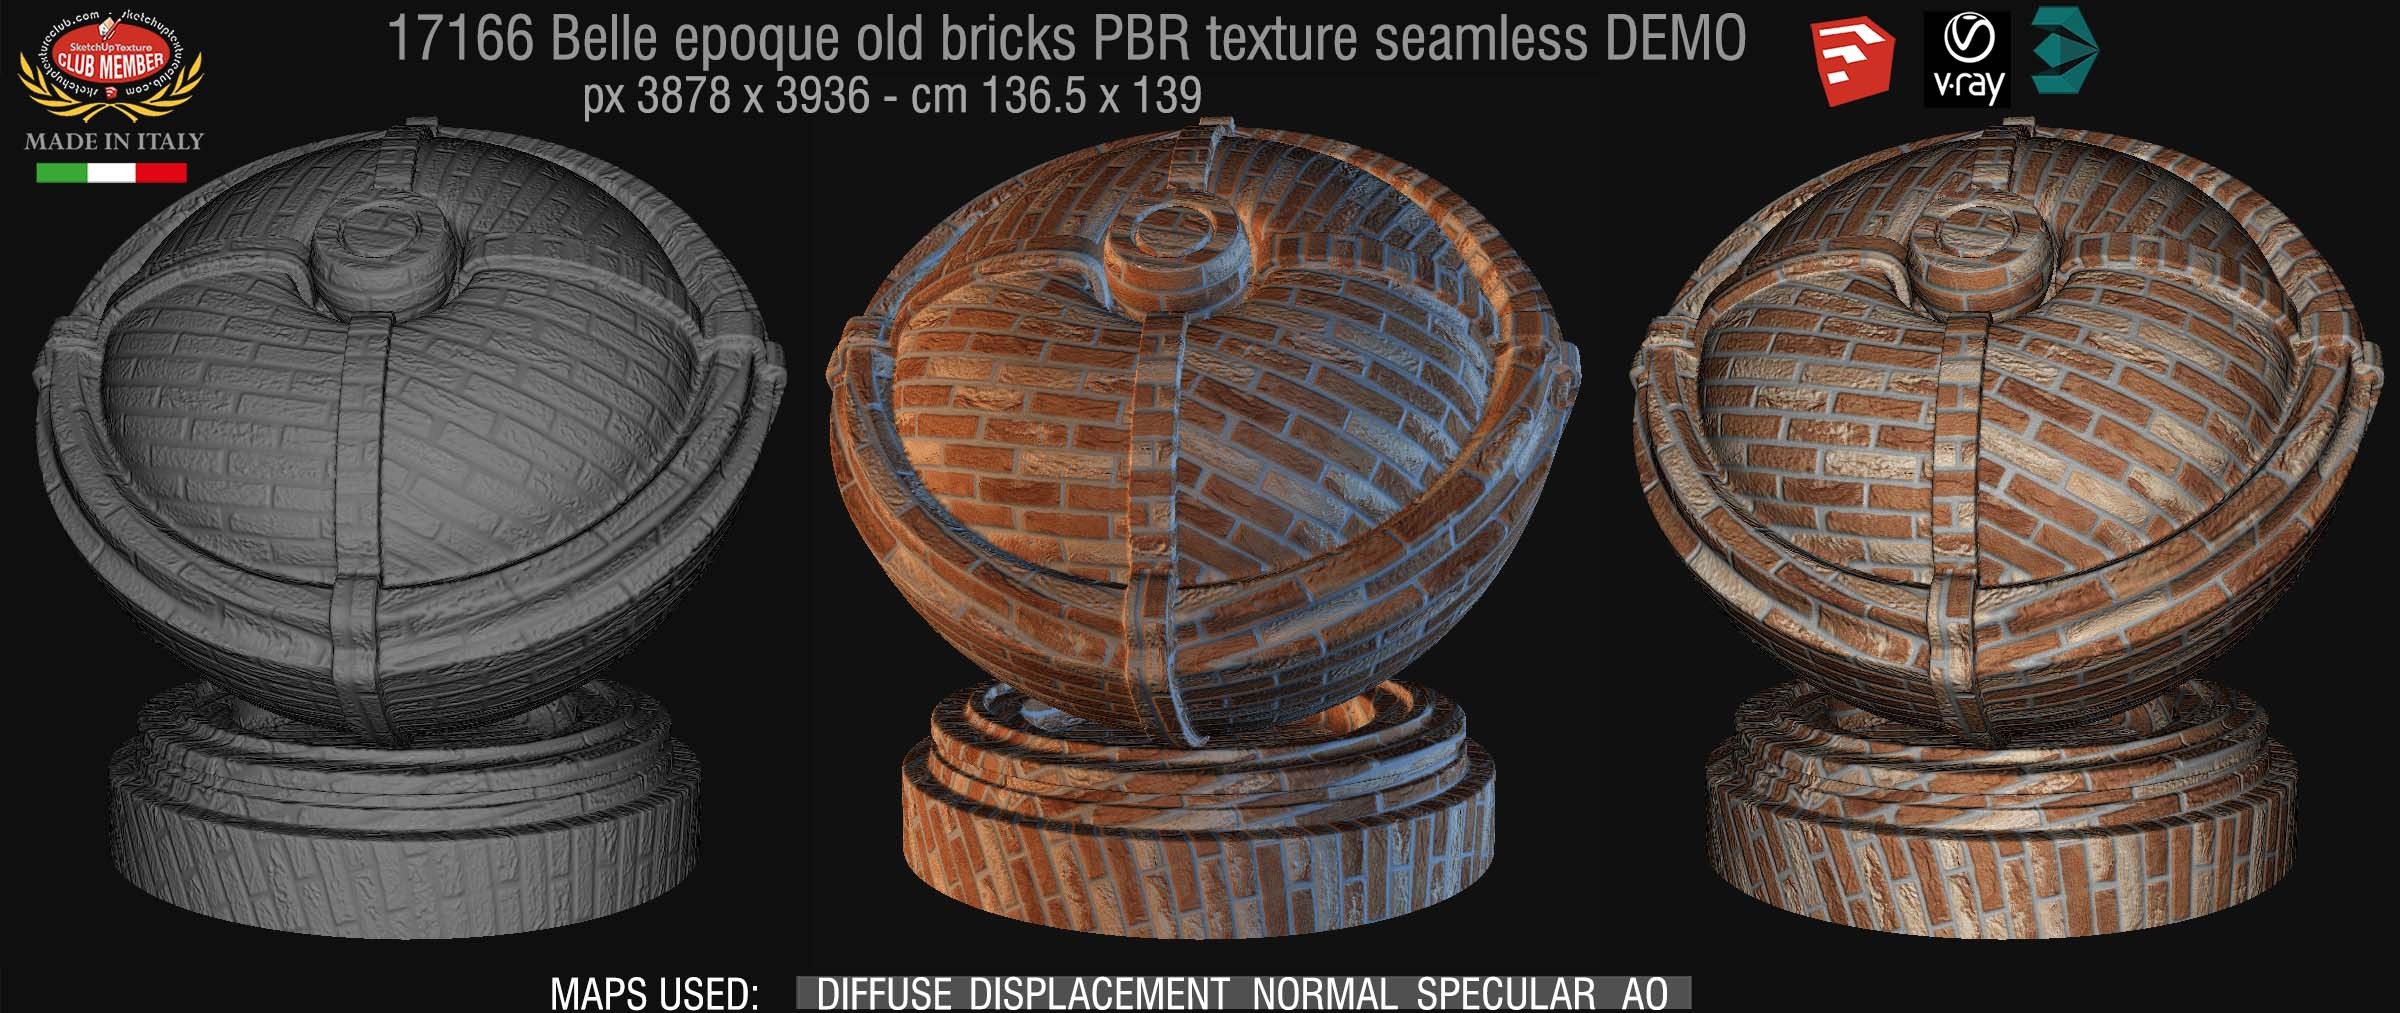 17166 Belle epoque old bricks texture seamless DEMO